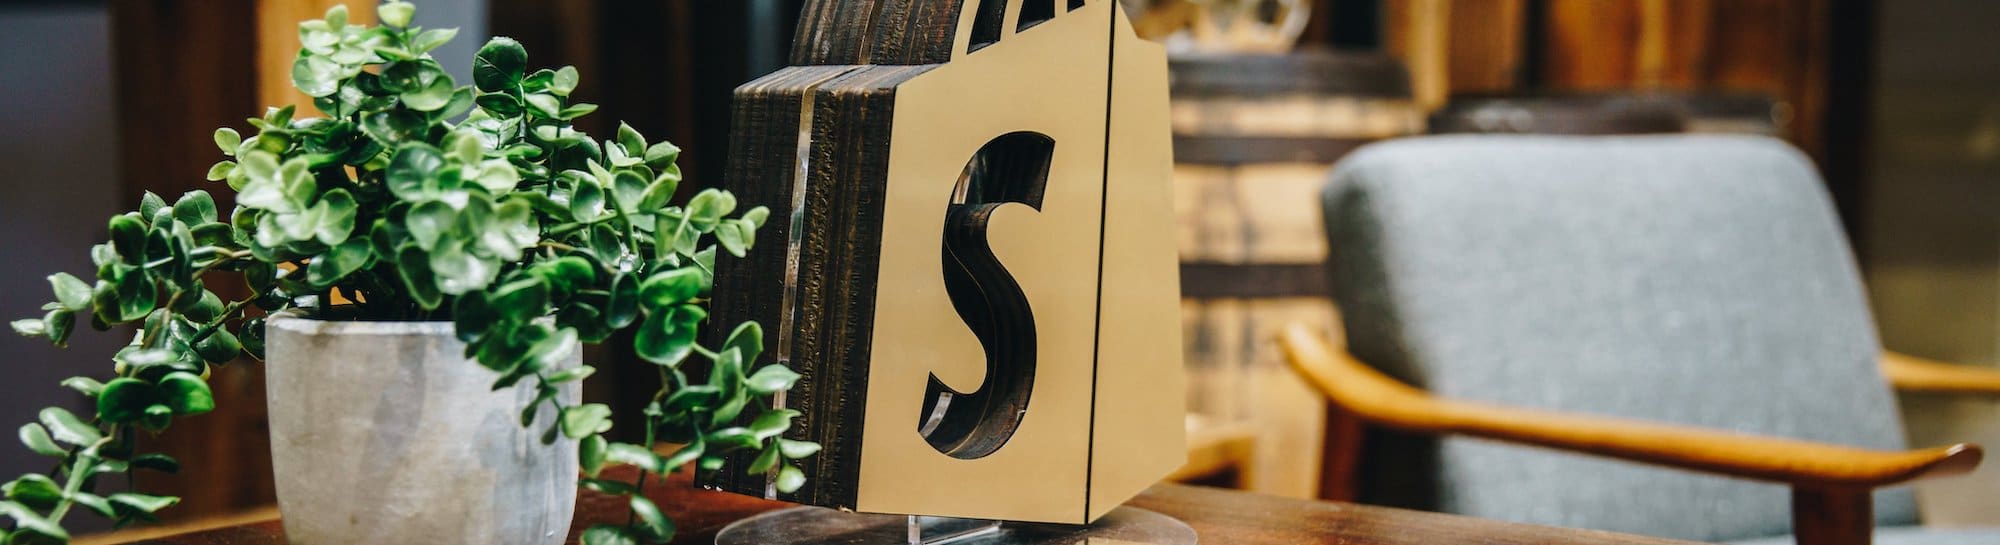 Shopify : livraison en points relais avec Sendcloud